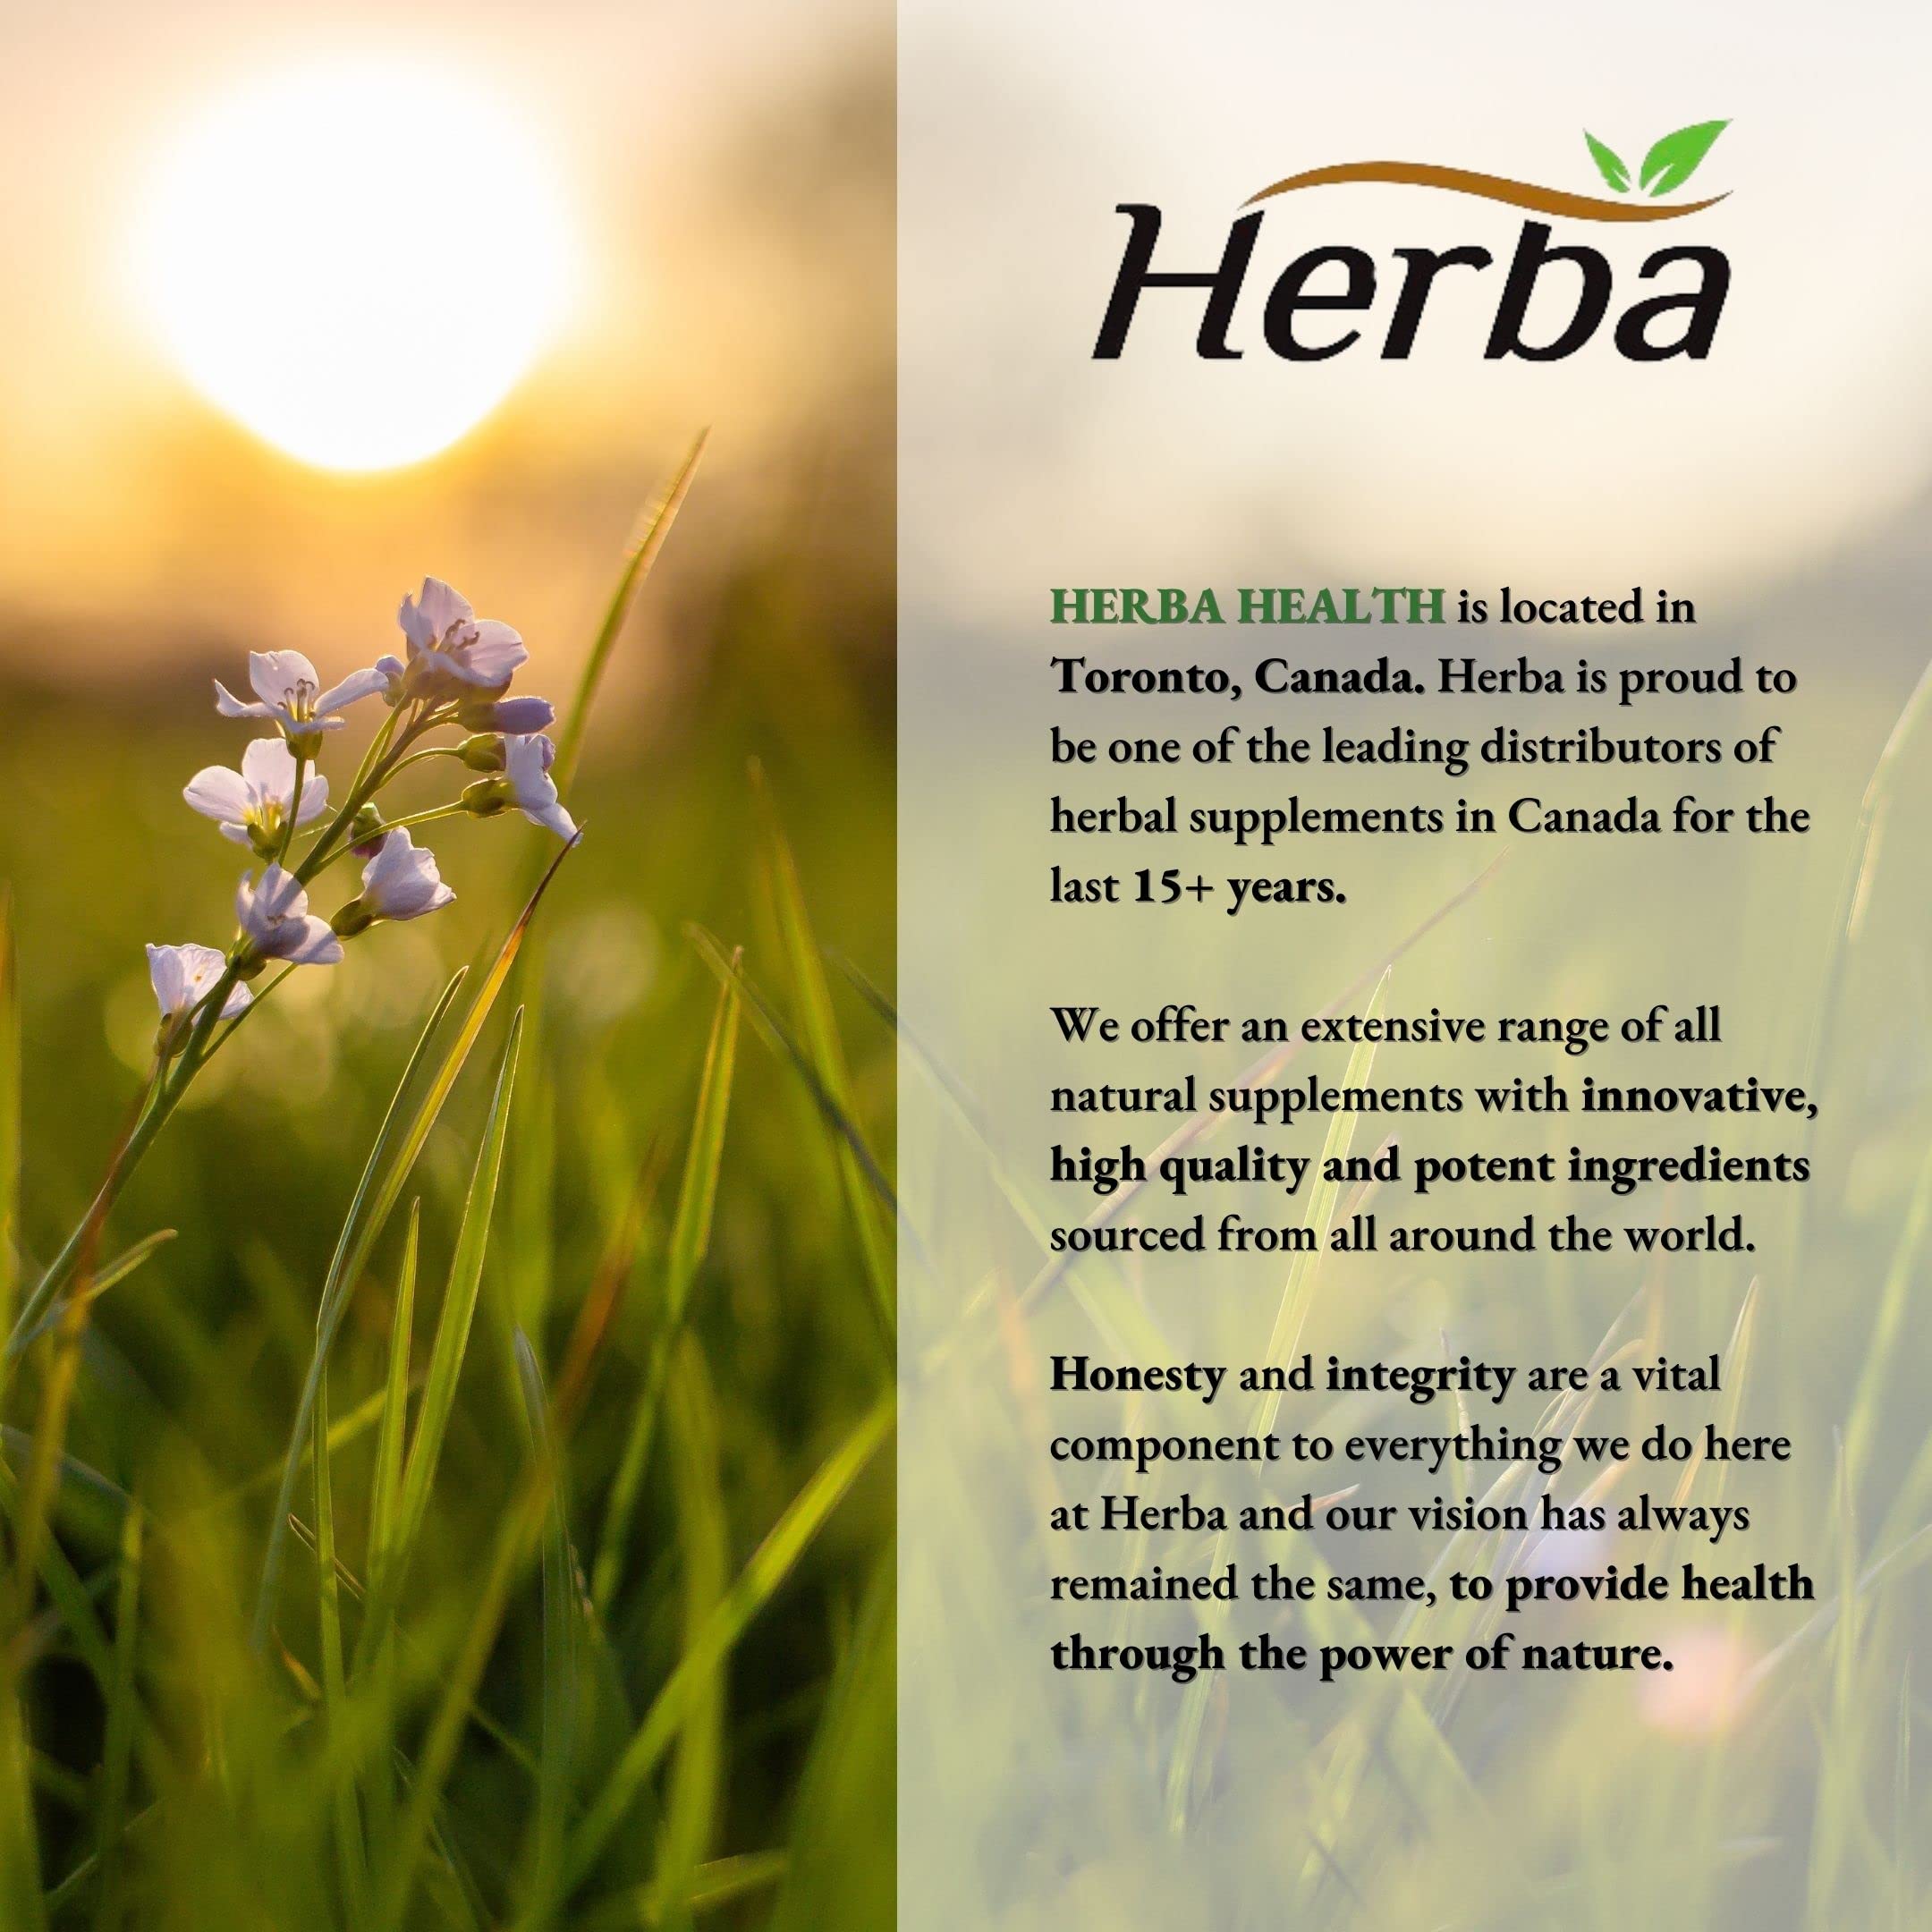 Herba Mushroom Complex Supplements – 120 Capsules